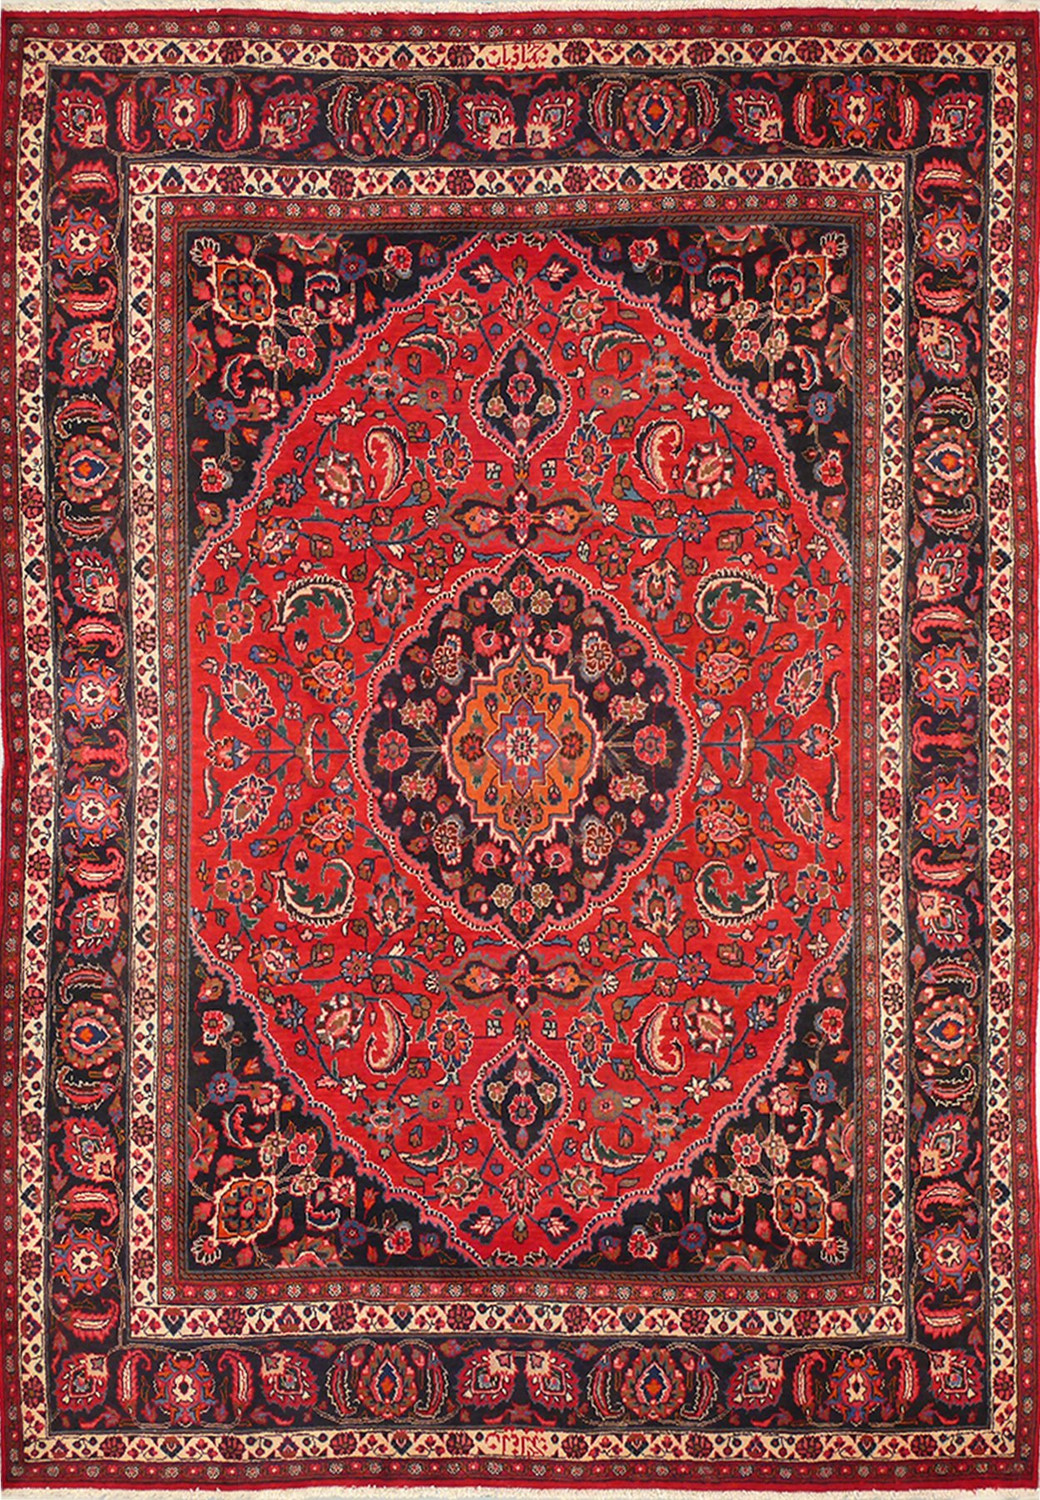 10 x 13'5" Persian Hamedan Rug